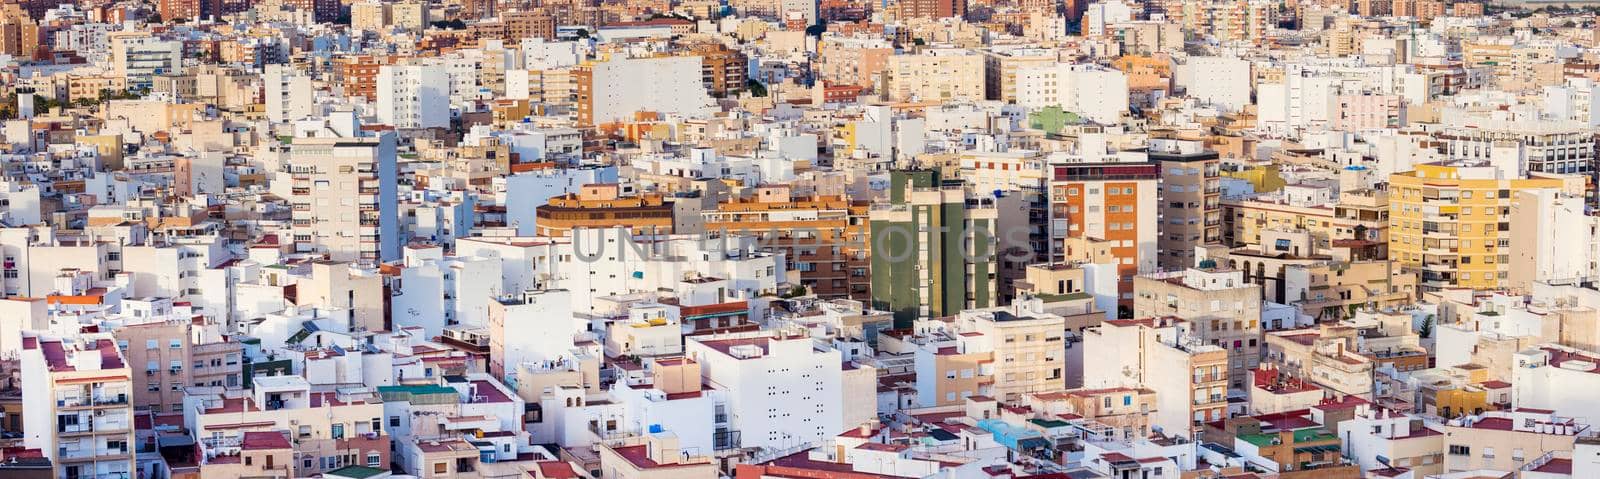 Architecture of Almeria - aerial photo. Almeria, Andalusia, Spain.